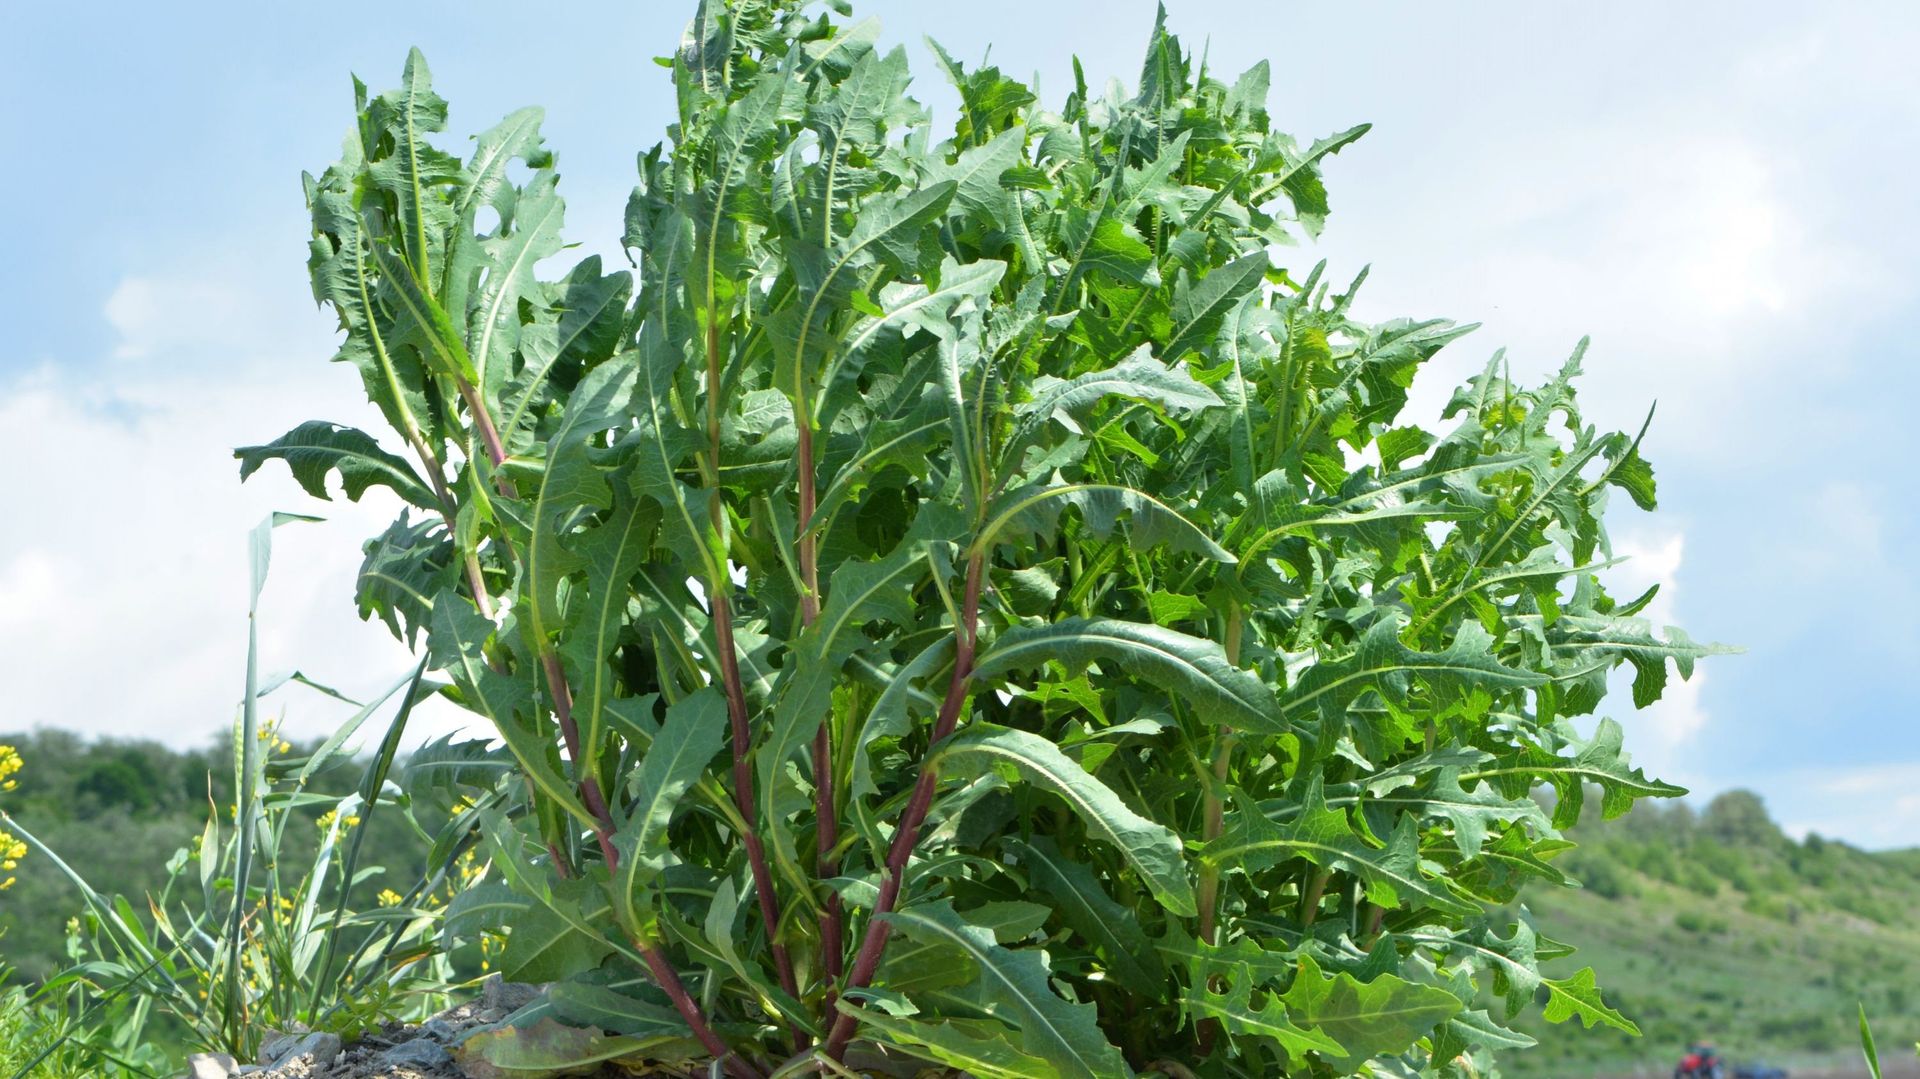 La laitue scariole – Lactuca serriola – est la plante sauvage qui a permis de donner naissance aux variétés de salades actuelles